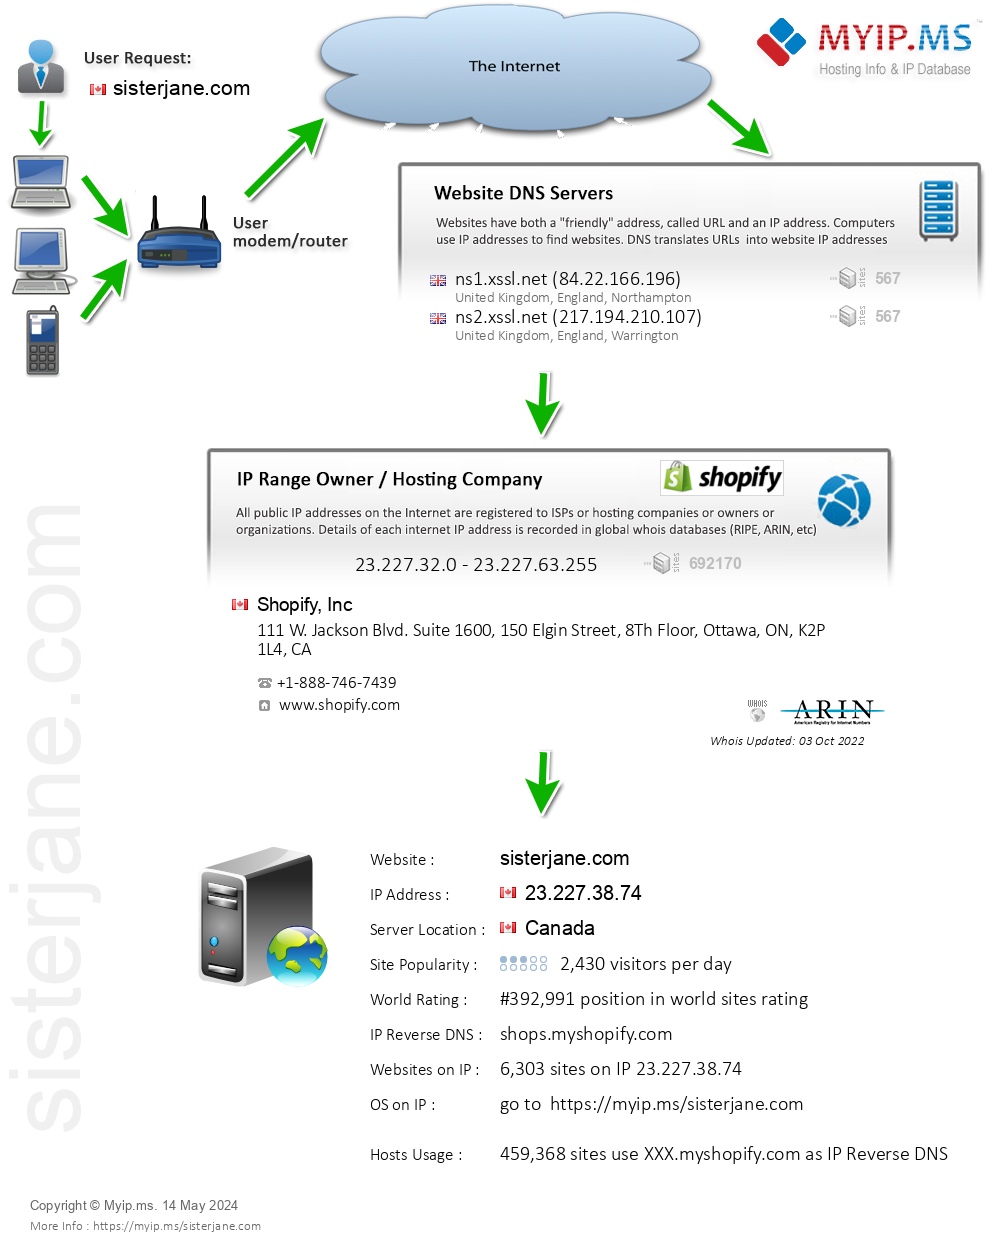 Sisterjane.com - Website Hosting Visual IP Diagram